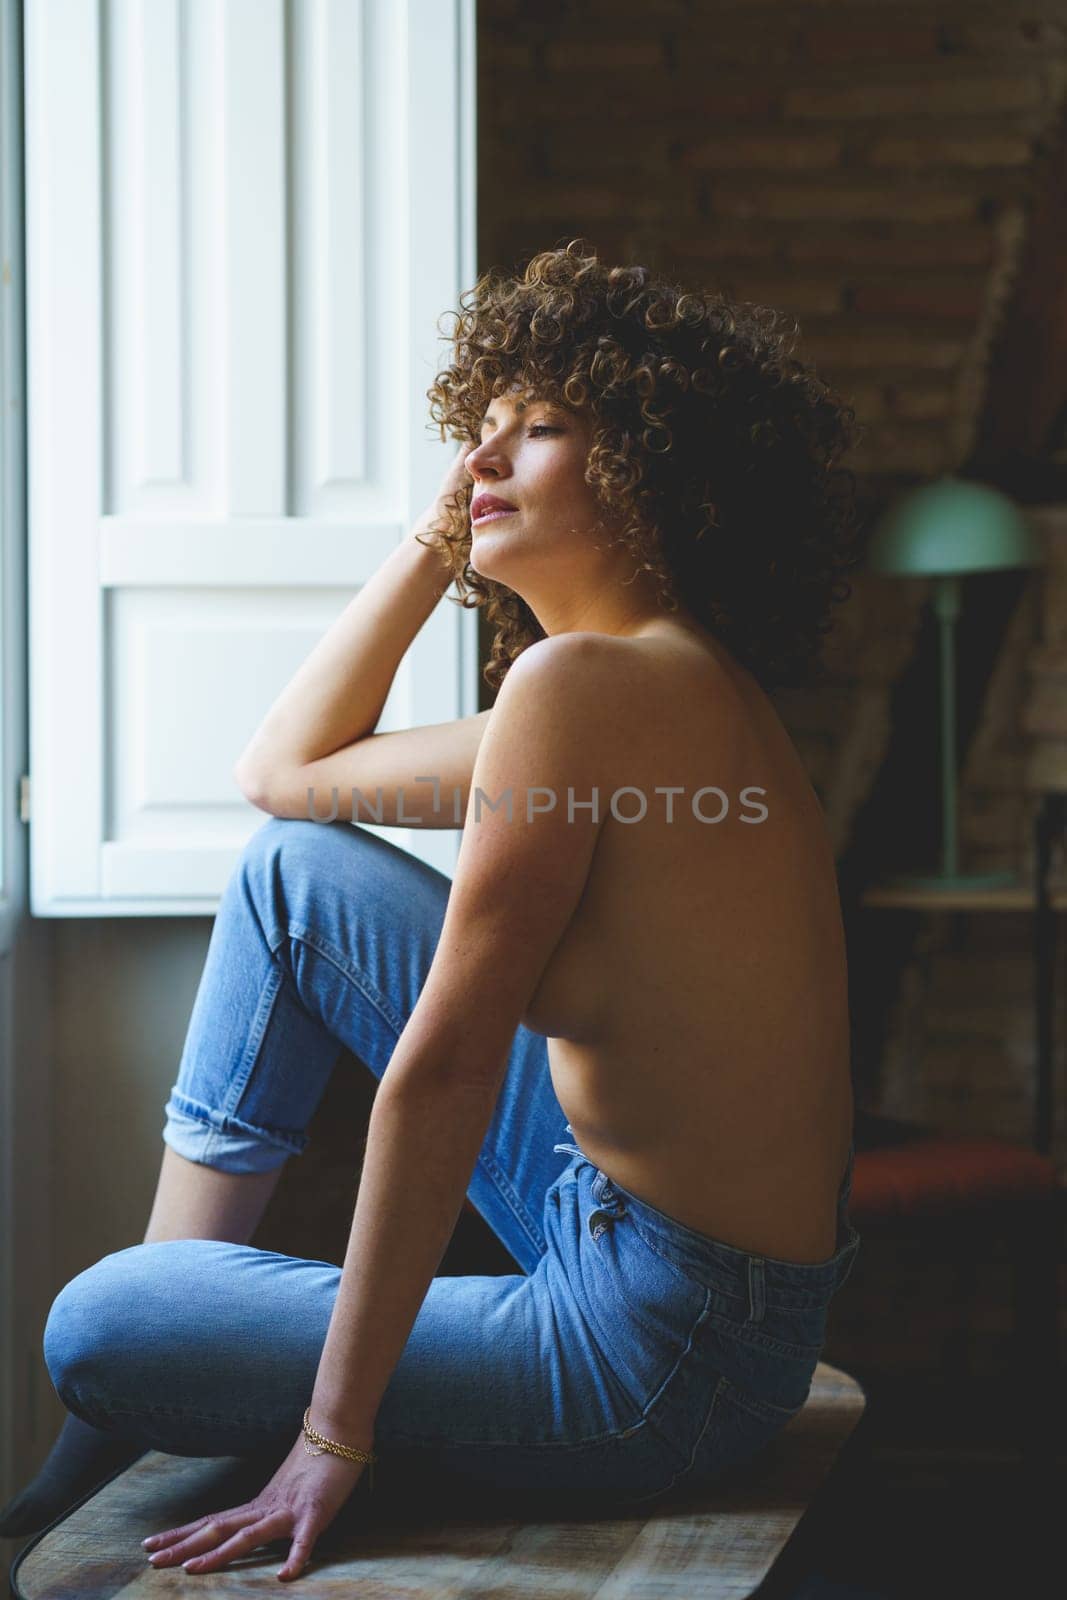 Topless female in jeans sitting near window by javiindy